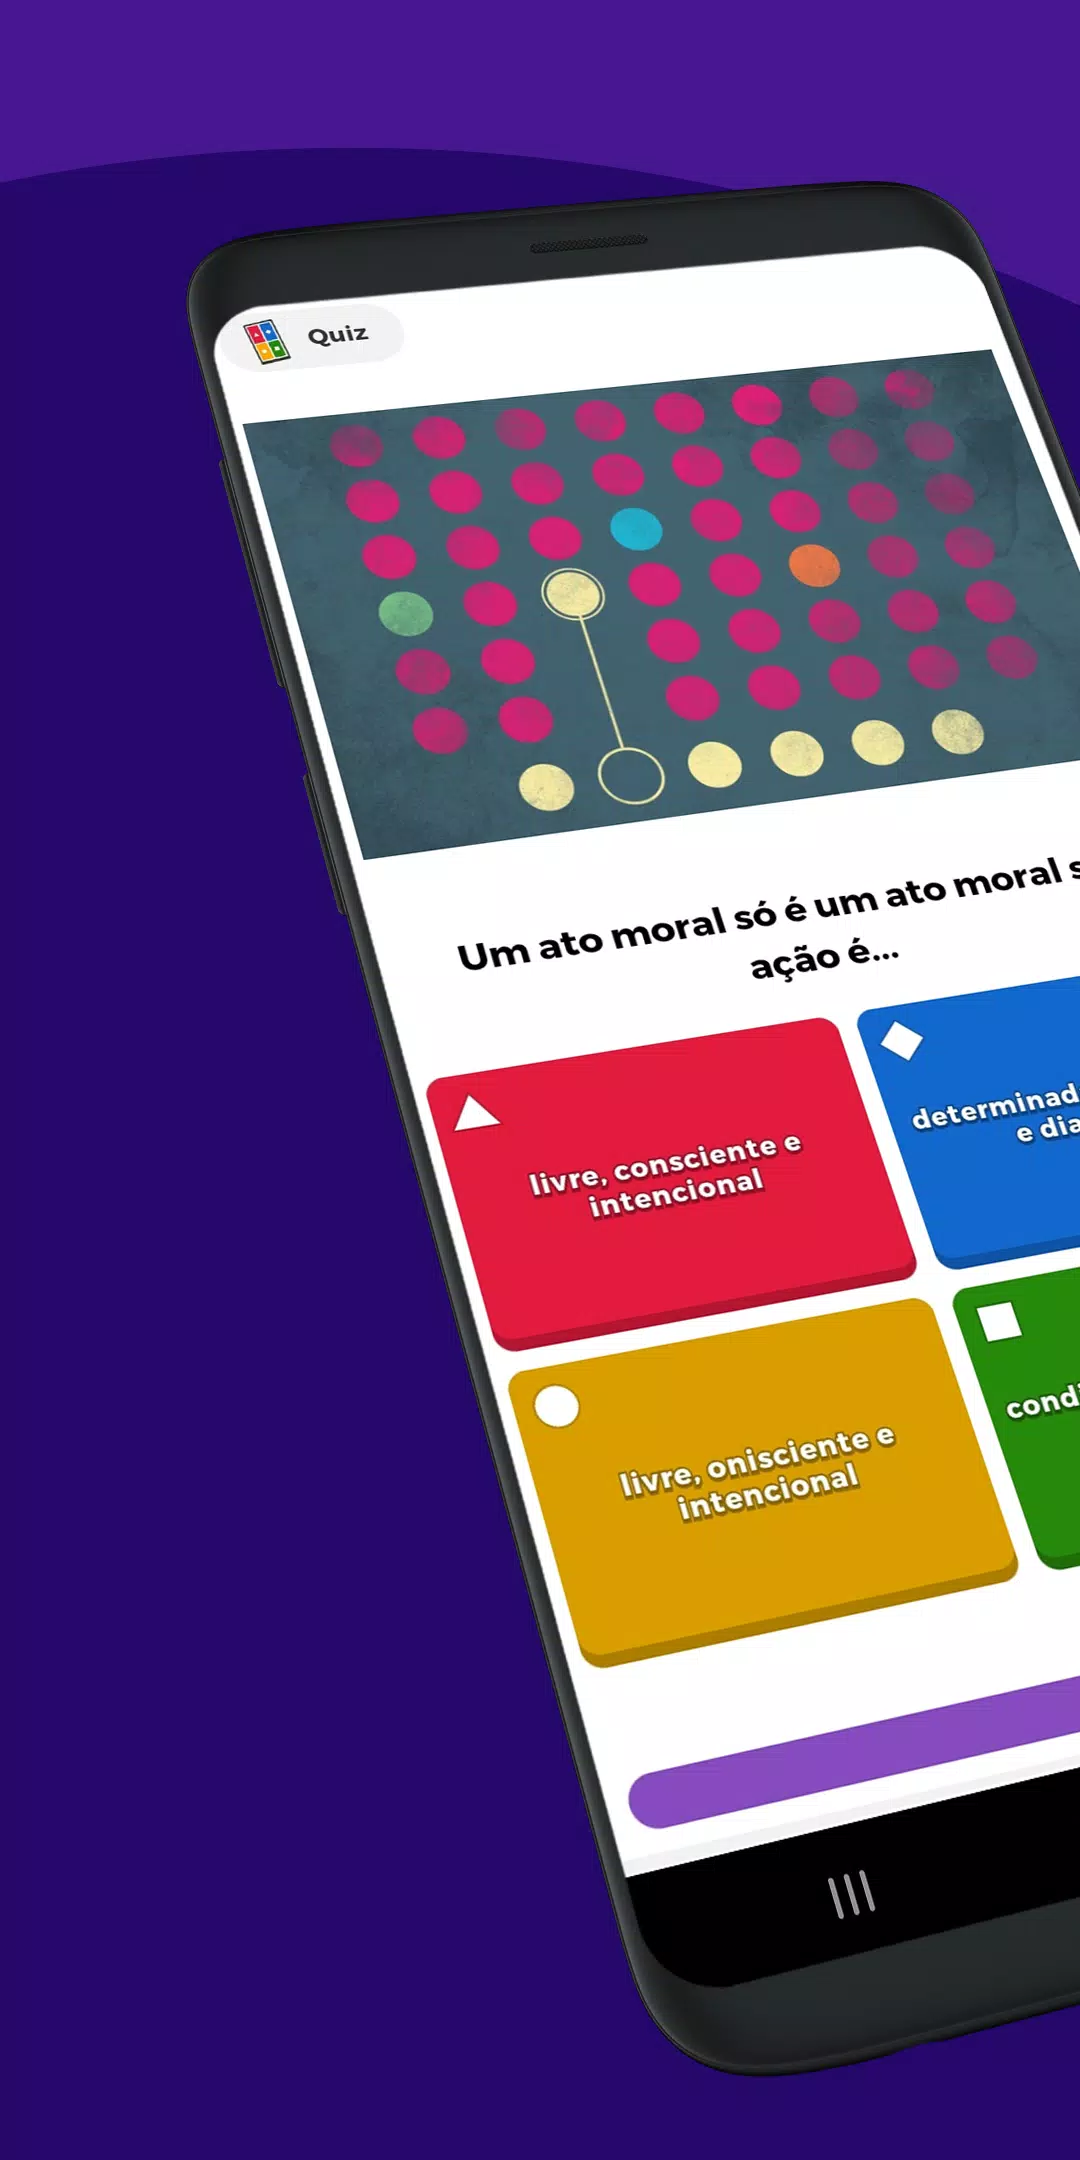 Kahoot! português - Aprender é bom demais com o app Kahoot!